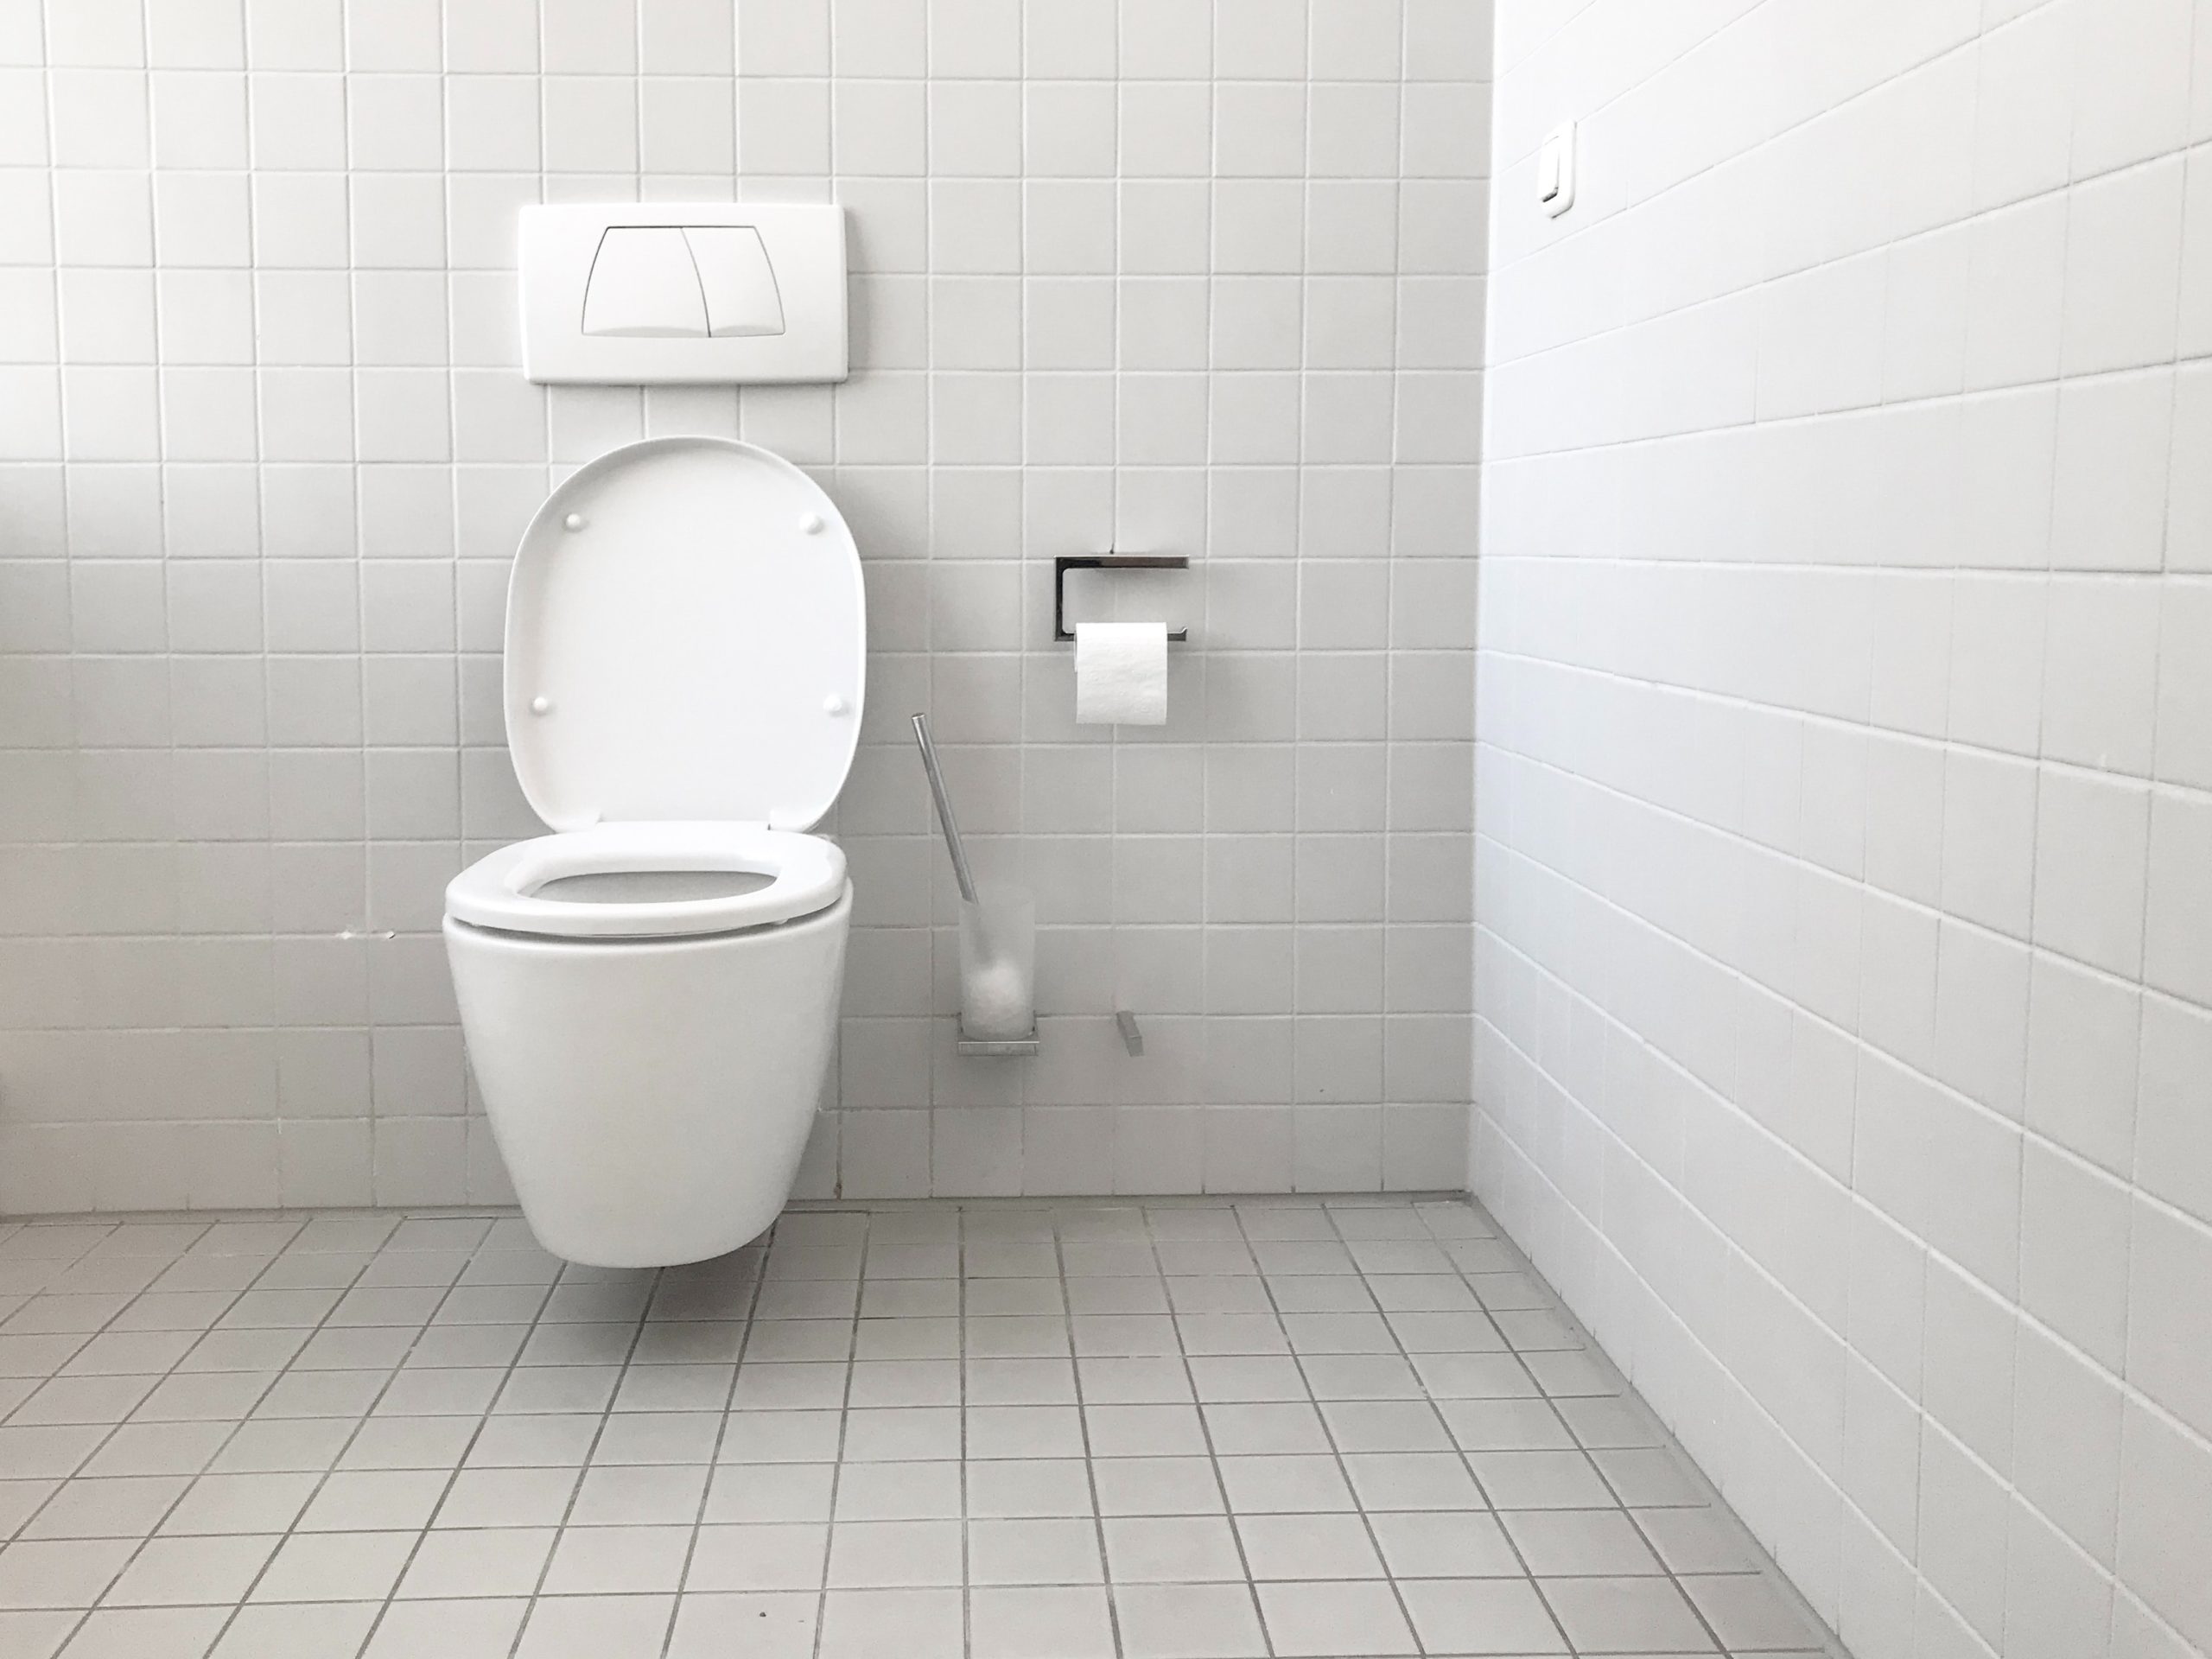 image of a toilet | portable toilet rental washington oregon